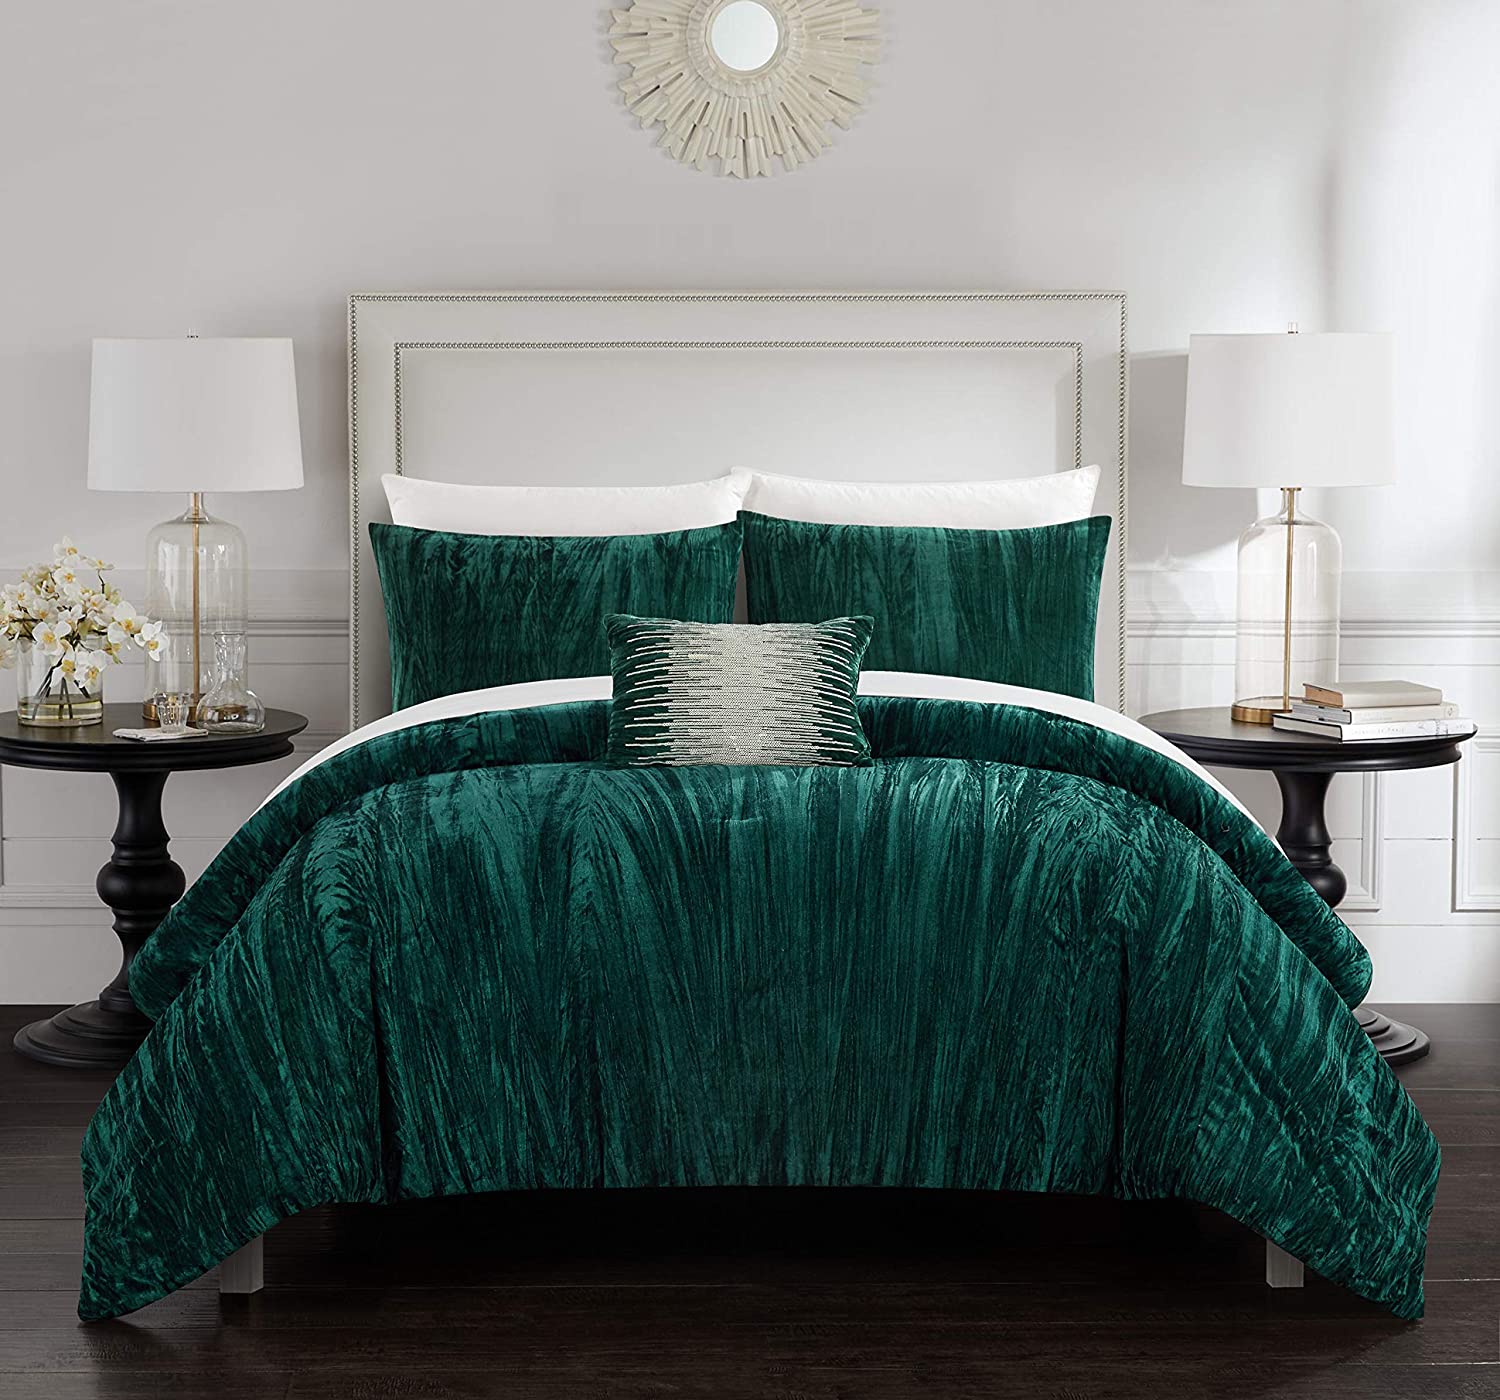 Decora Chic Home Westmont 4 Piece Comforter Set Crinkle Crushed Velvet Bedding 